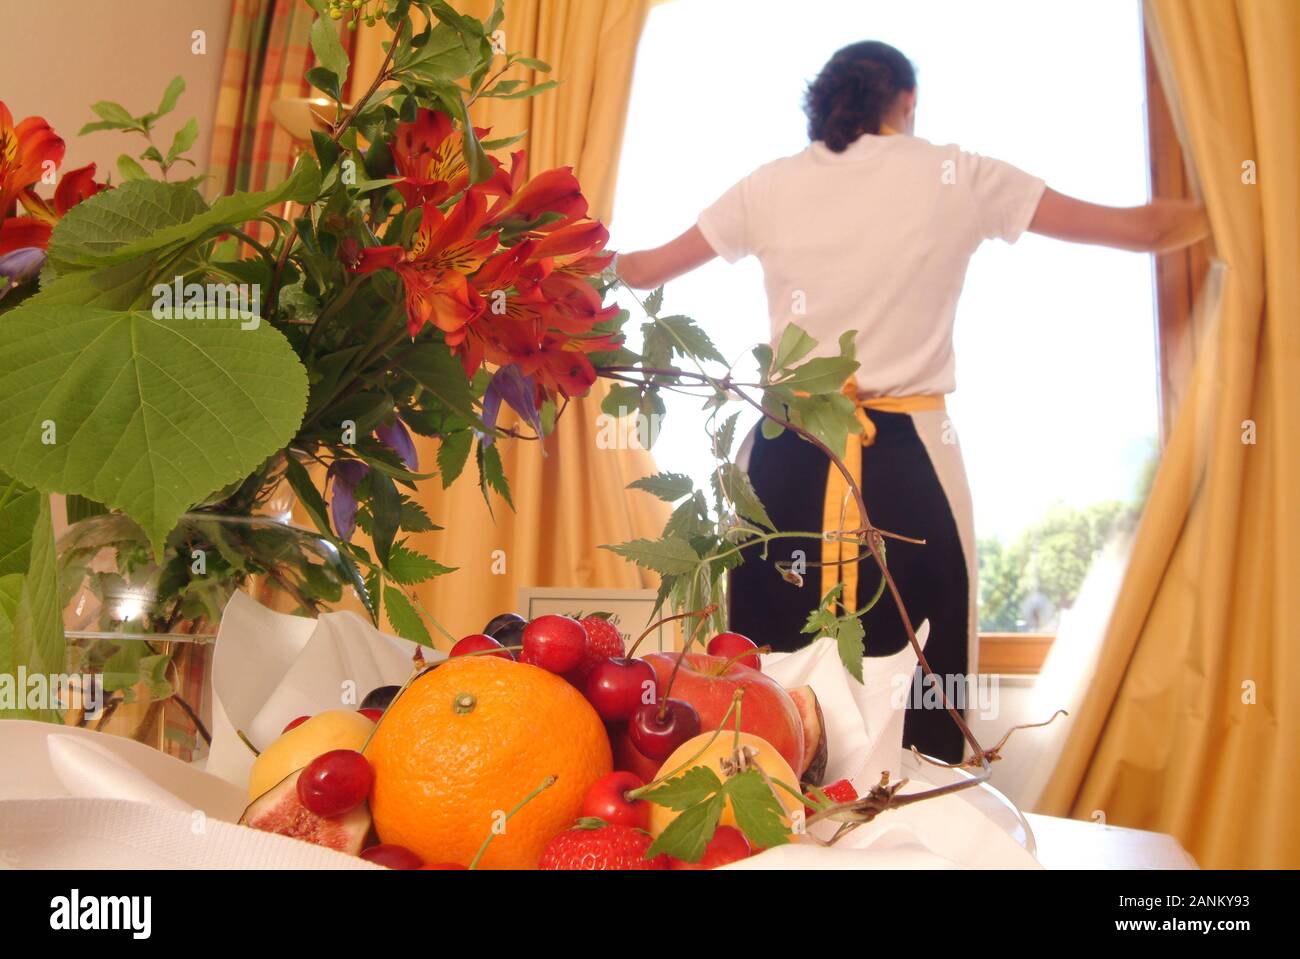 Zimmermädchen und Obstschale in einem Hotelzimmer - Chambermaid and fruit bowl in hotel room Stock Photo